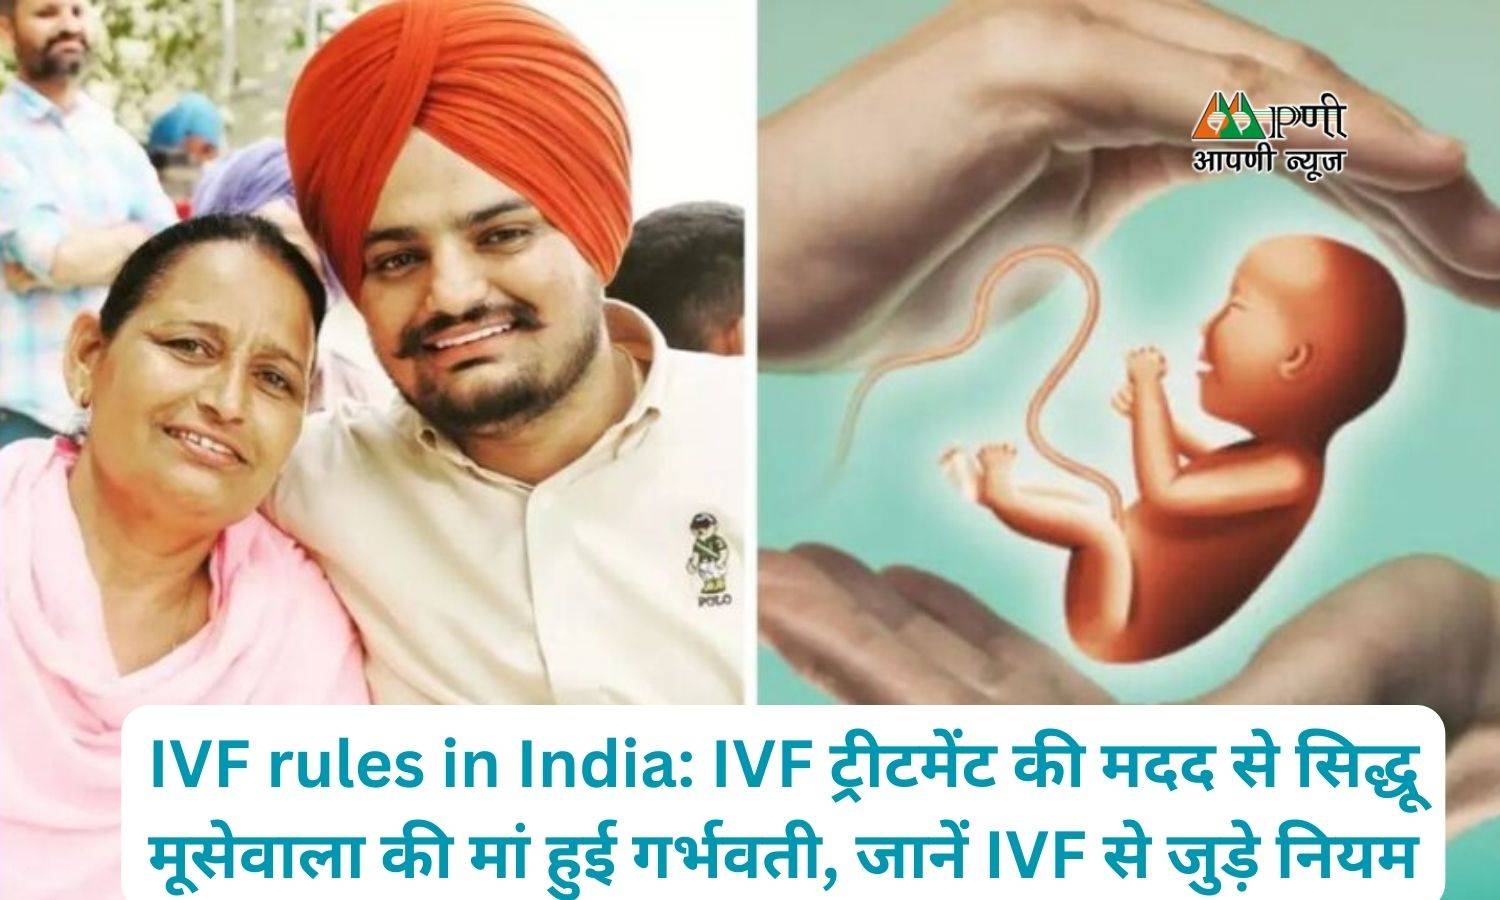 IVF rules in India: IVF ट्रीटमेंट की मदद से सिद्धू मूसेवाला की मां हुई गर्भवती, जानें IVF से जुड़े नियम